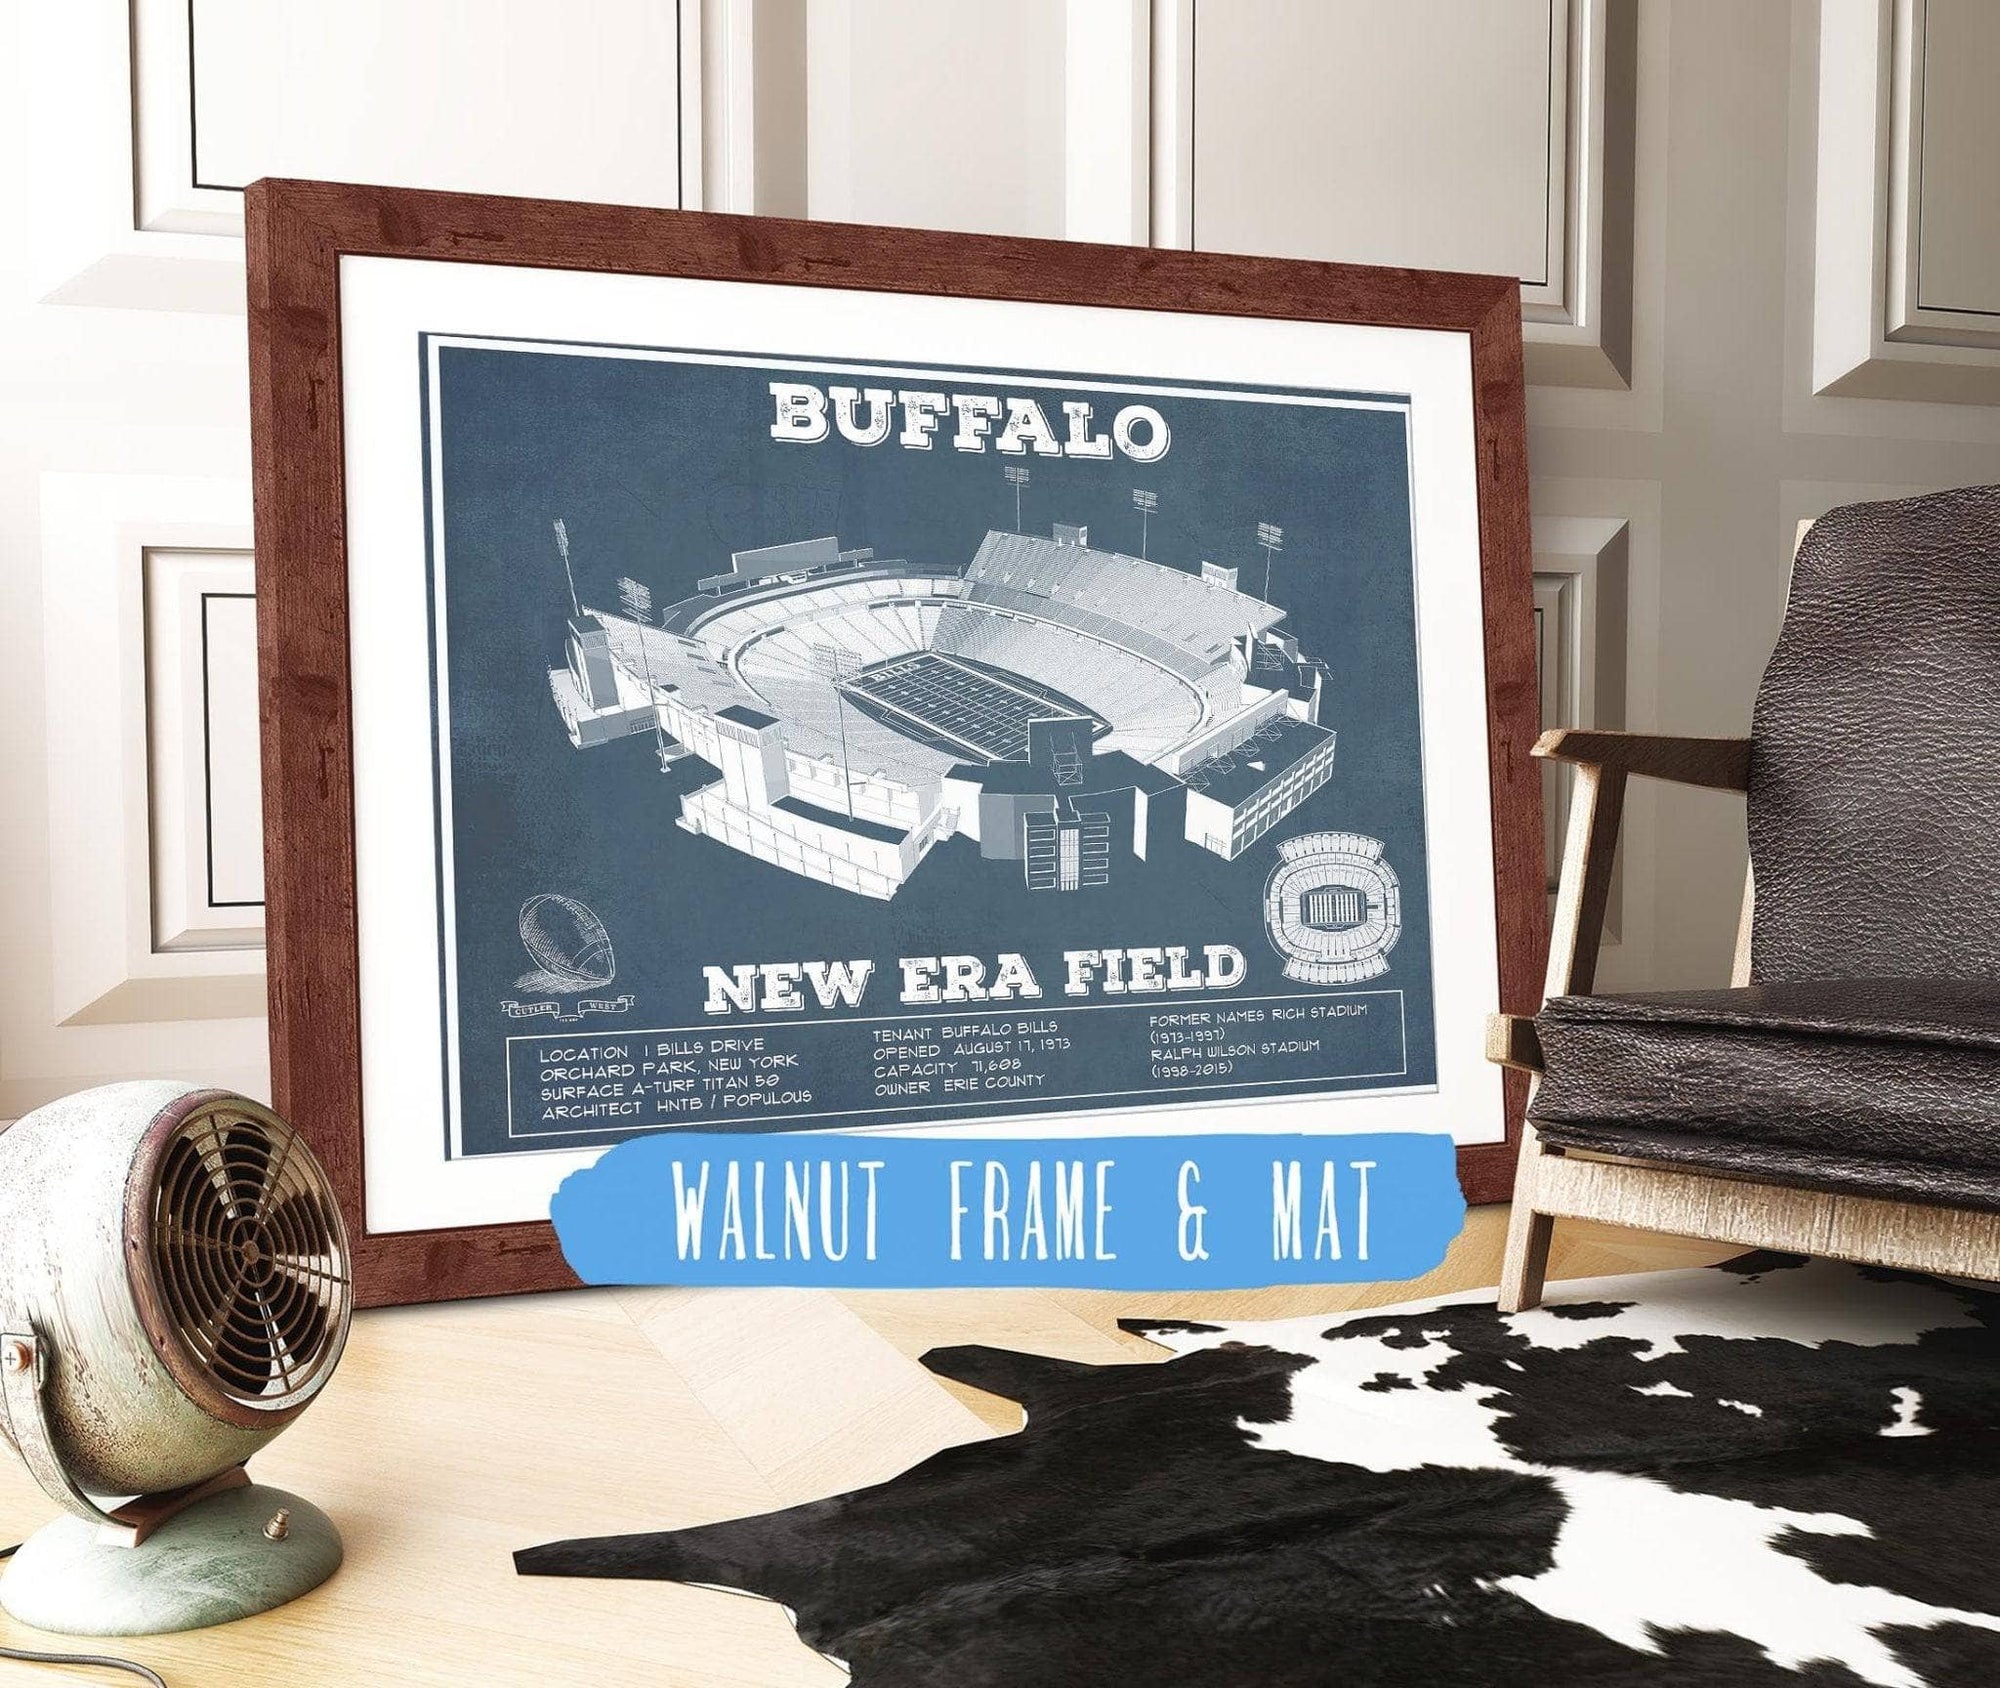 Cutler West Pro Football Collection 14" x 11" / Walnut Frame & Mat Buffalo Bills - New Era Field - Vintage Football Print 698474966-TOP